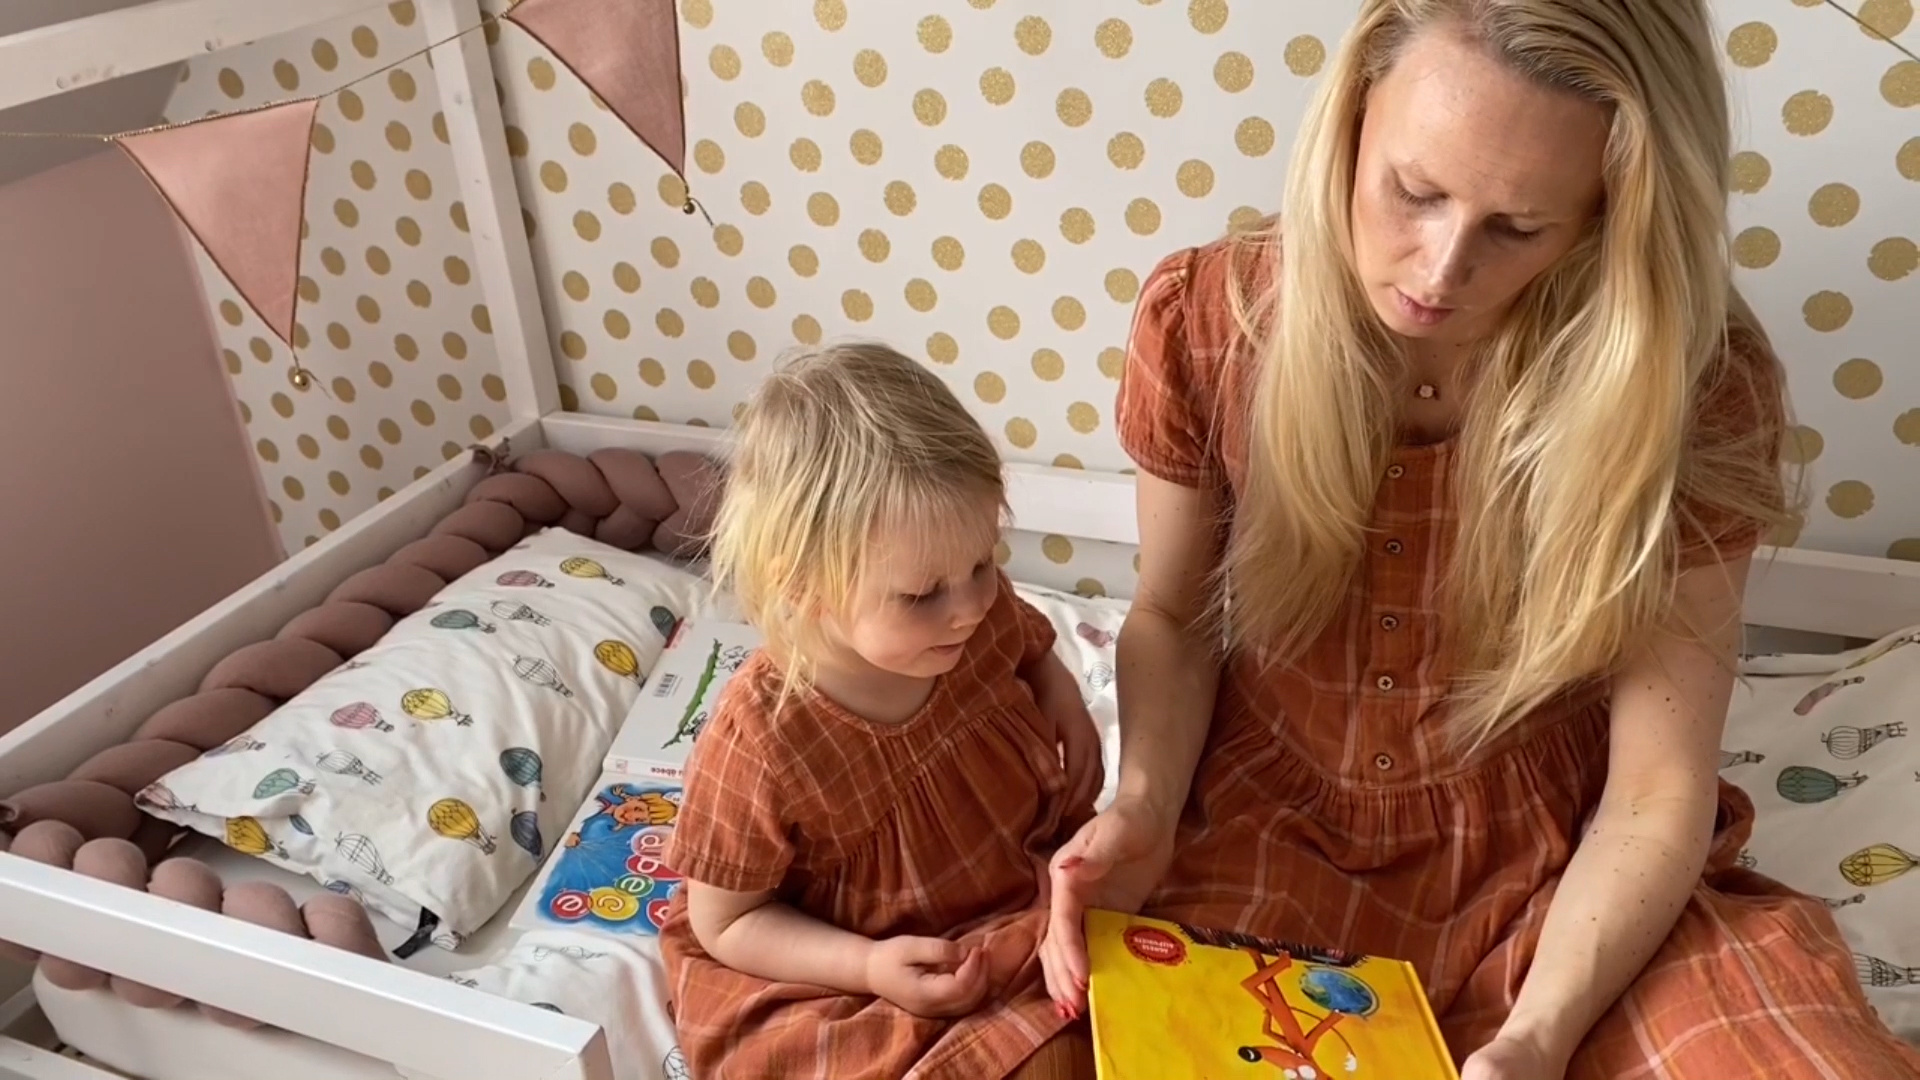  “Bibliotēka” un Rūta Dvinska aicina ģimenes piedalīties video konkursā par grāmatām